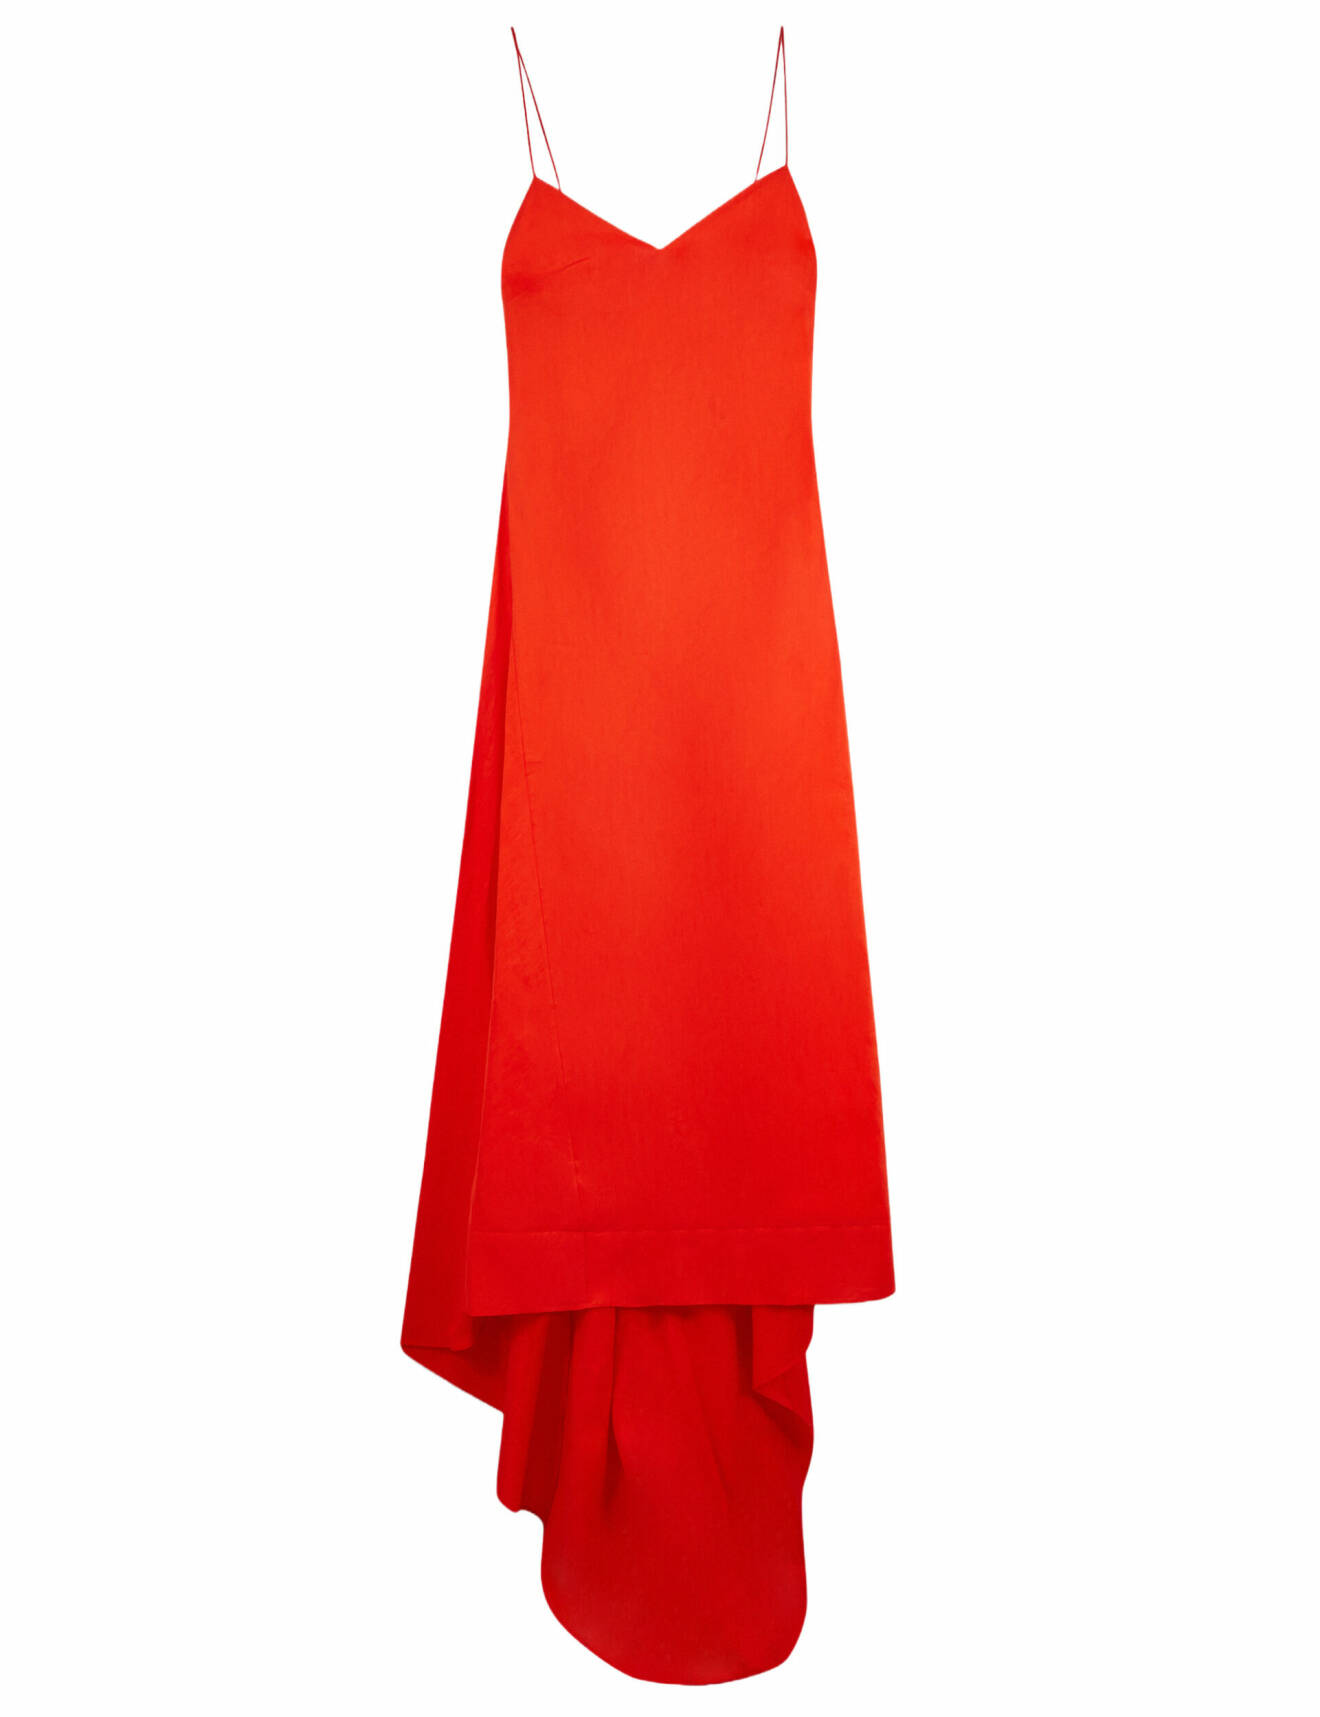 röd klänning med släp